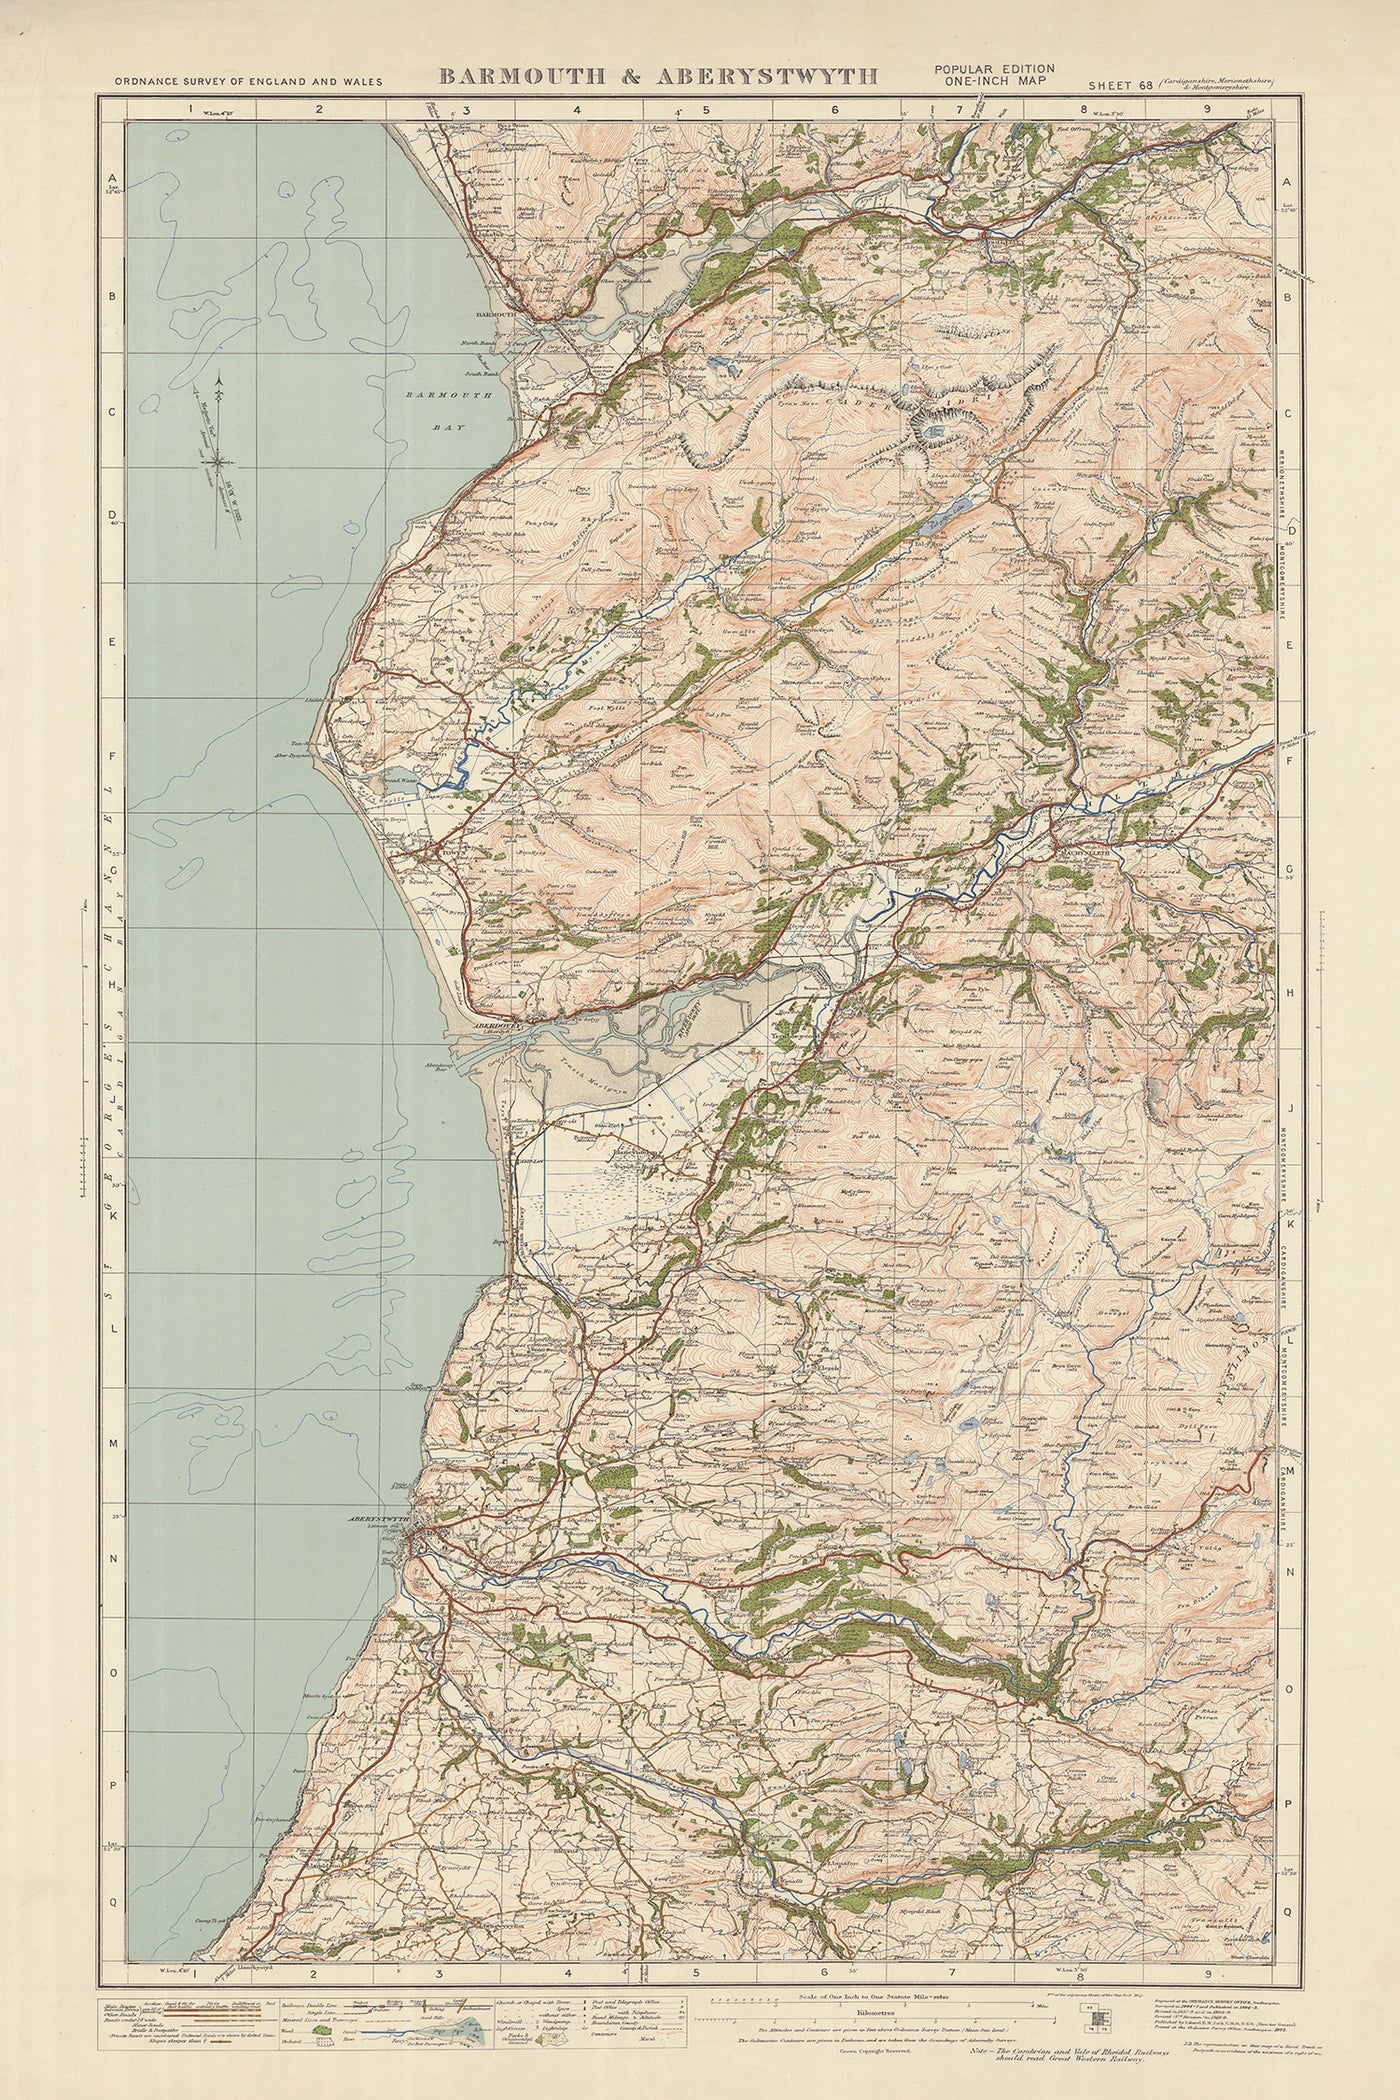 Carte Old Ordnance Survey, feuille 68 - Barmouth et Aberystwyth, 1925 : Tywyn, Aberdyfi, Machynlleth, parc national d'Eryri (Snowdonia)